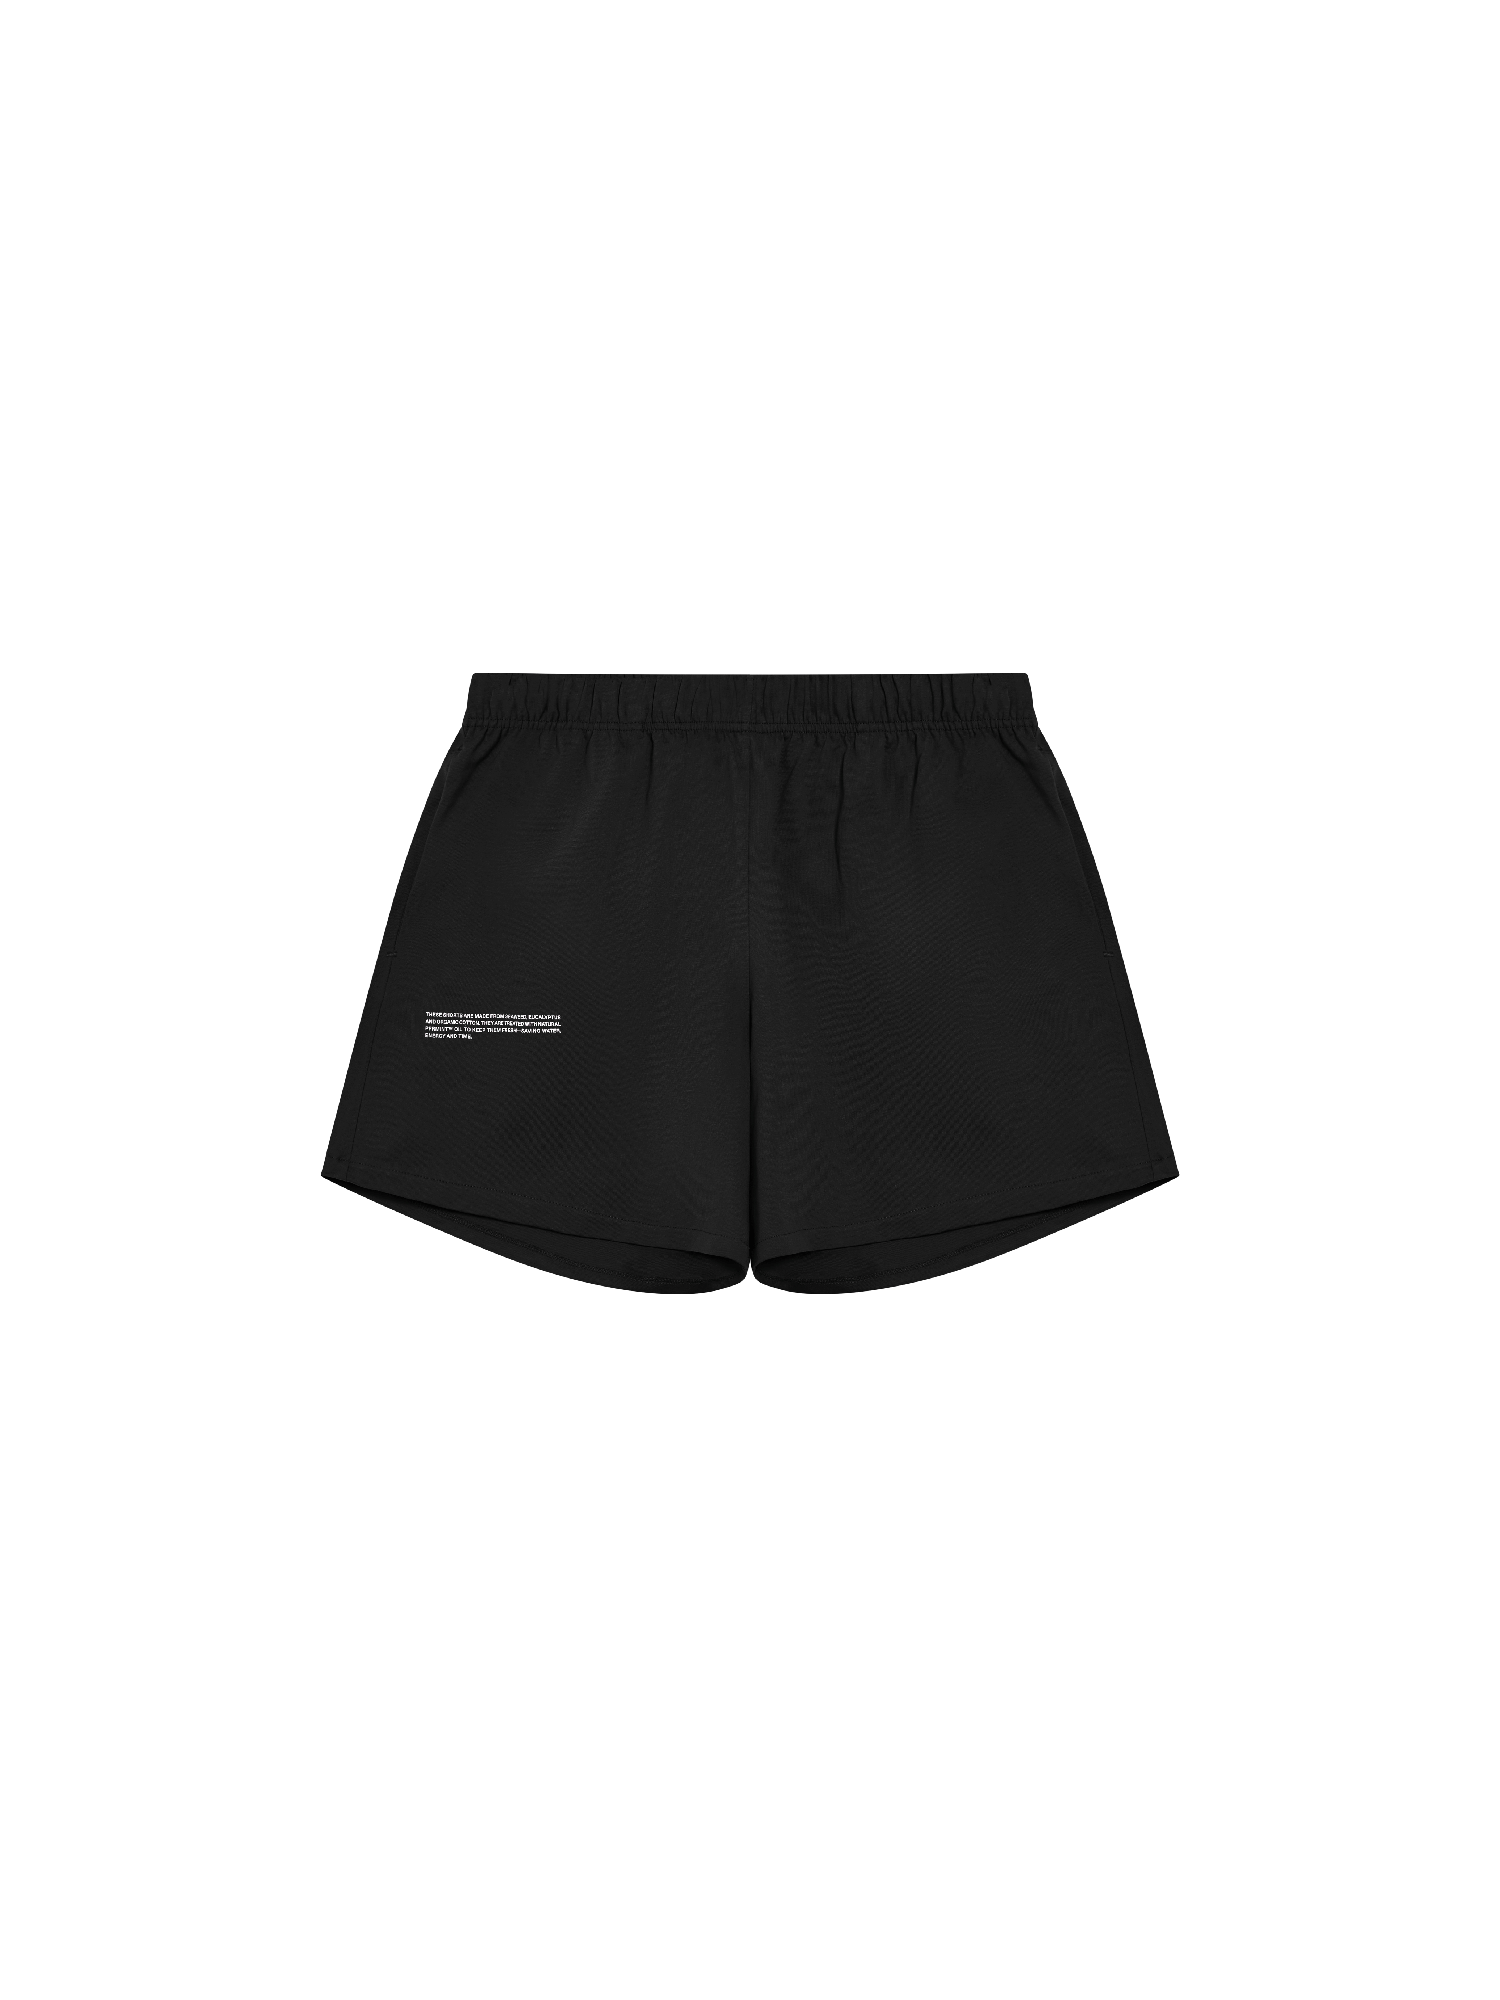 Organic Cotton Pajama Loose Shorts with C-FIBER-packshot-3